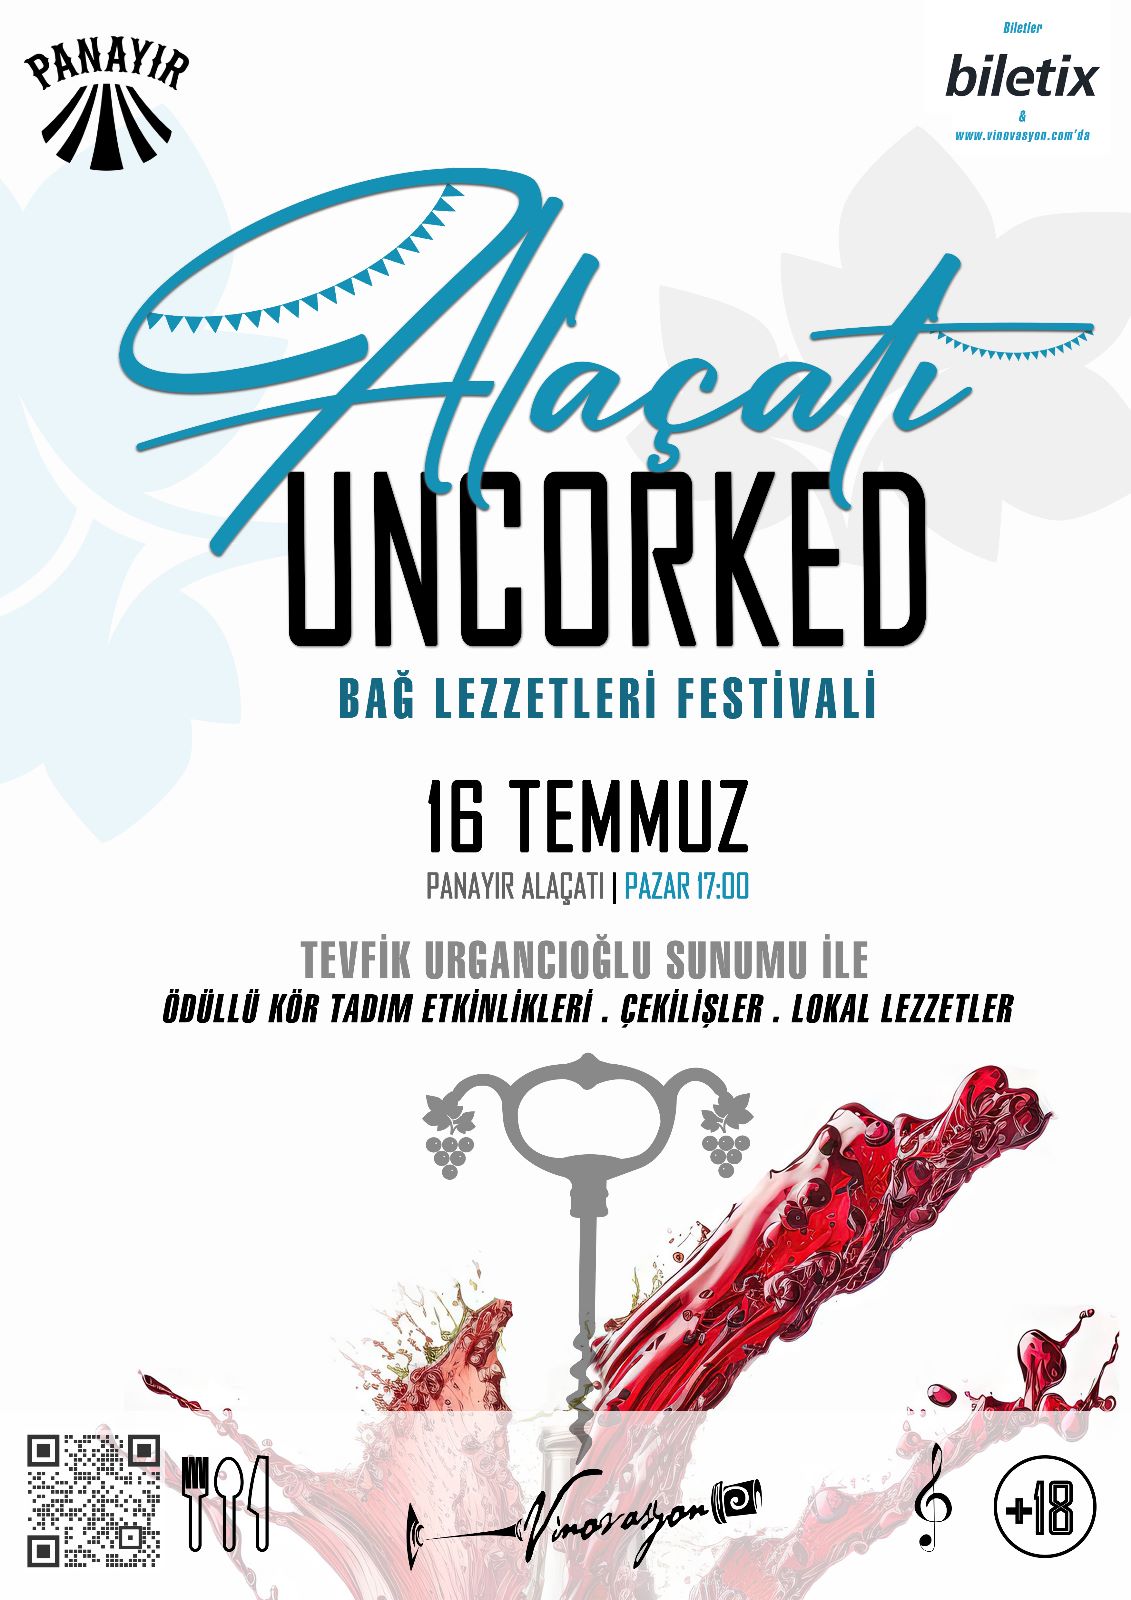   Bu Yazın En Lezzetli Festivali: Alaçatı Uncorked Fest ile Bağ Lezzetleri başlıyor!